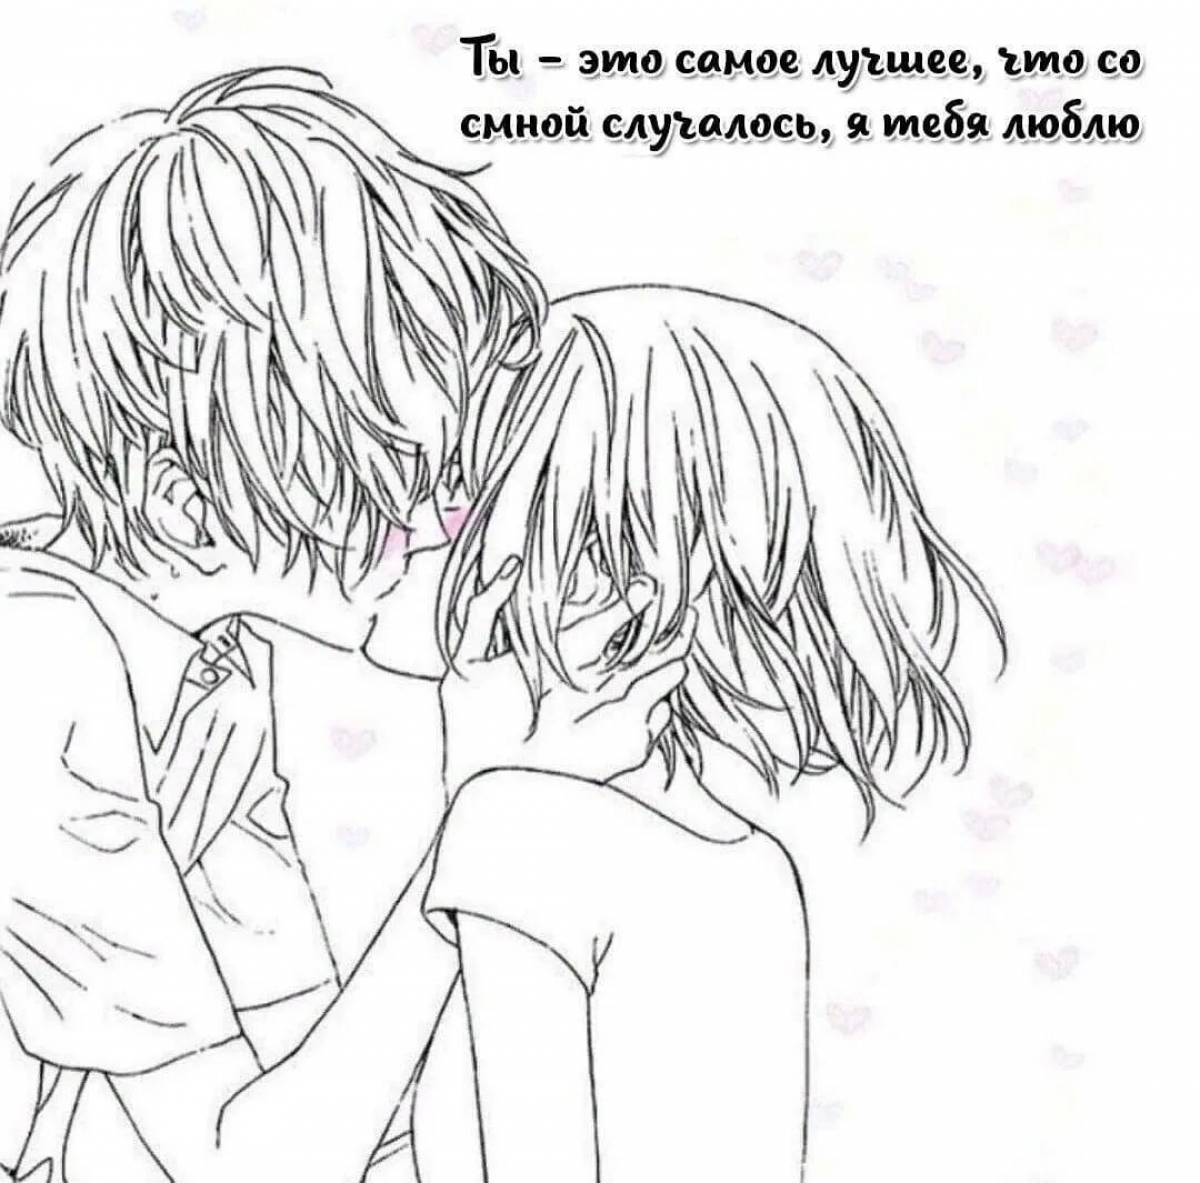 Anime kiss #3